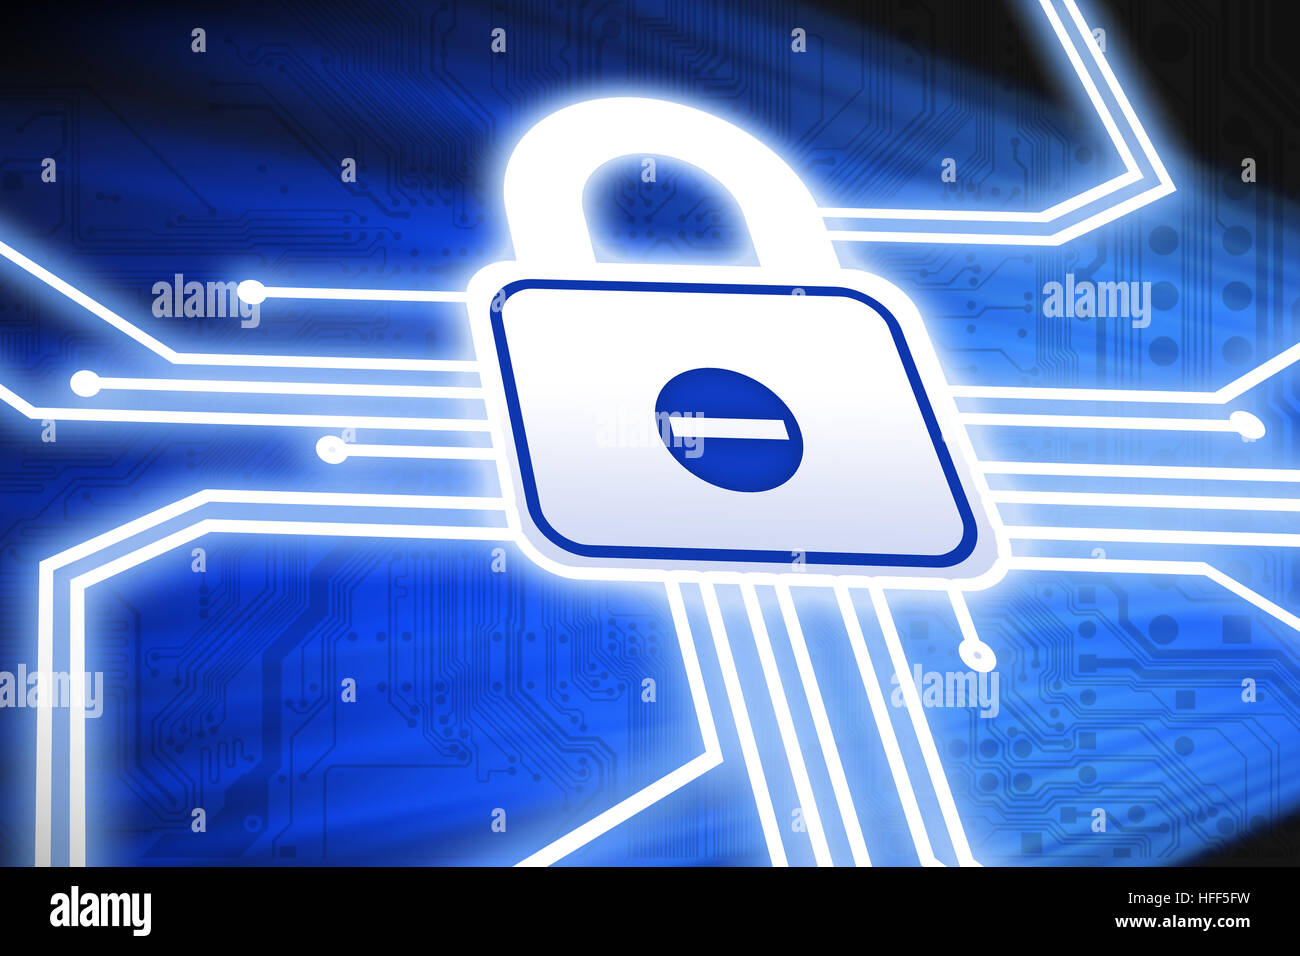 Concepto de seguridad cibernética con placa de circuito y candado en fondo azul. Foto de stock